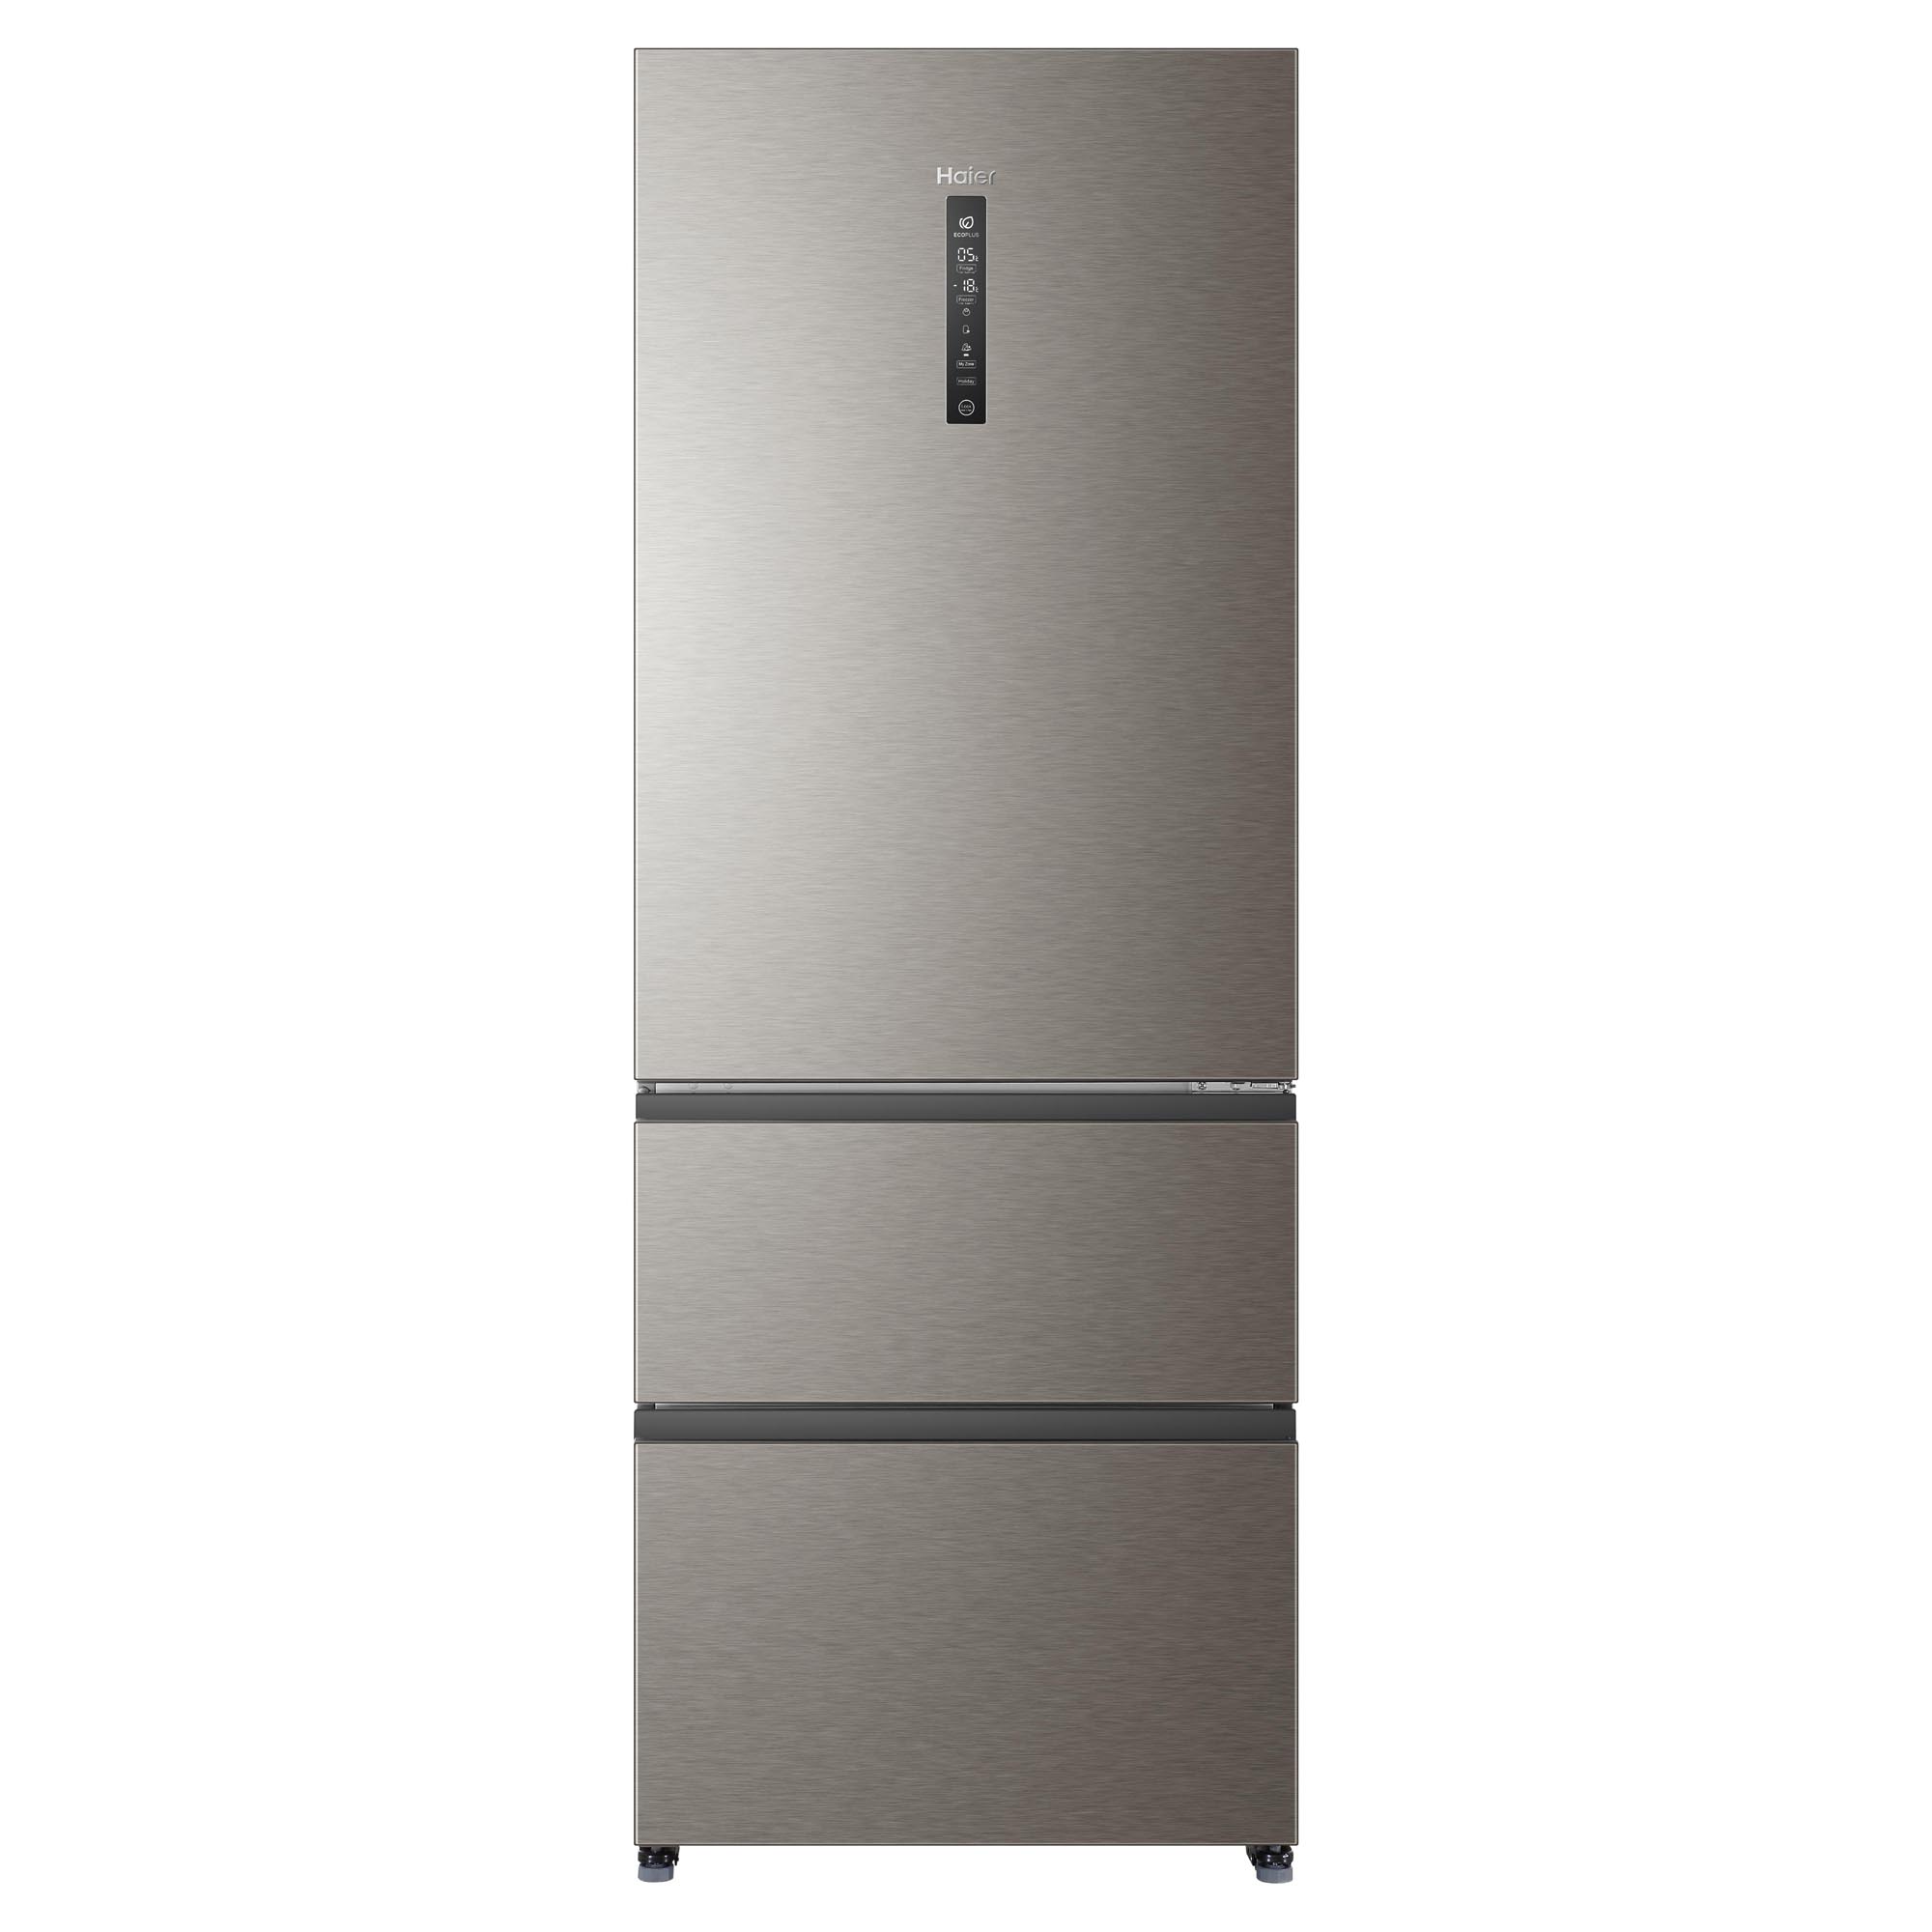 Холодильник Haier a4f742cmg. Холодильник Haier a4f742cmg, серебристый. Холодильник Хайер 742. Холодильник многодверный Haier a4f742cmg.